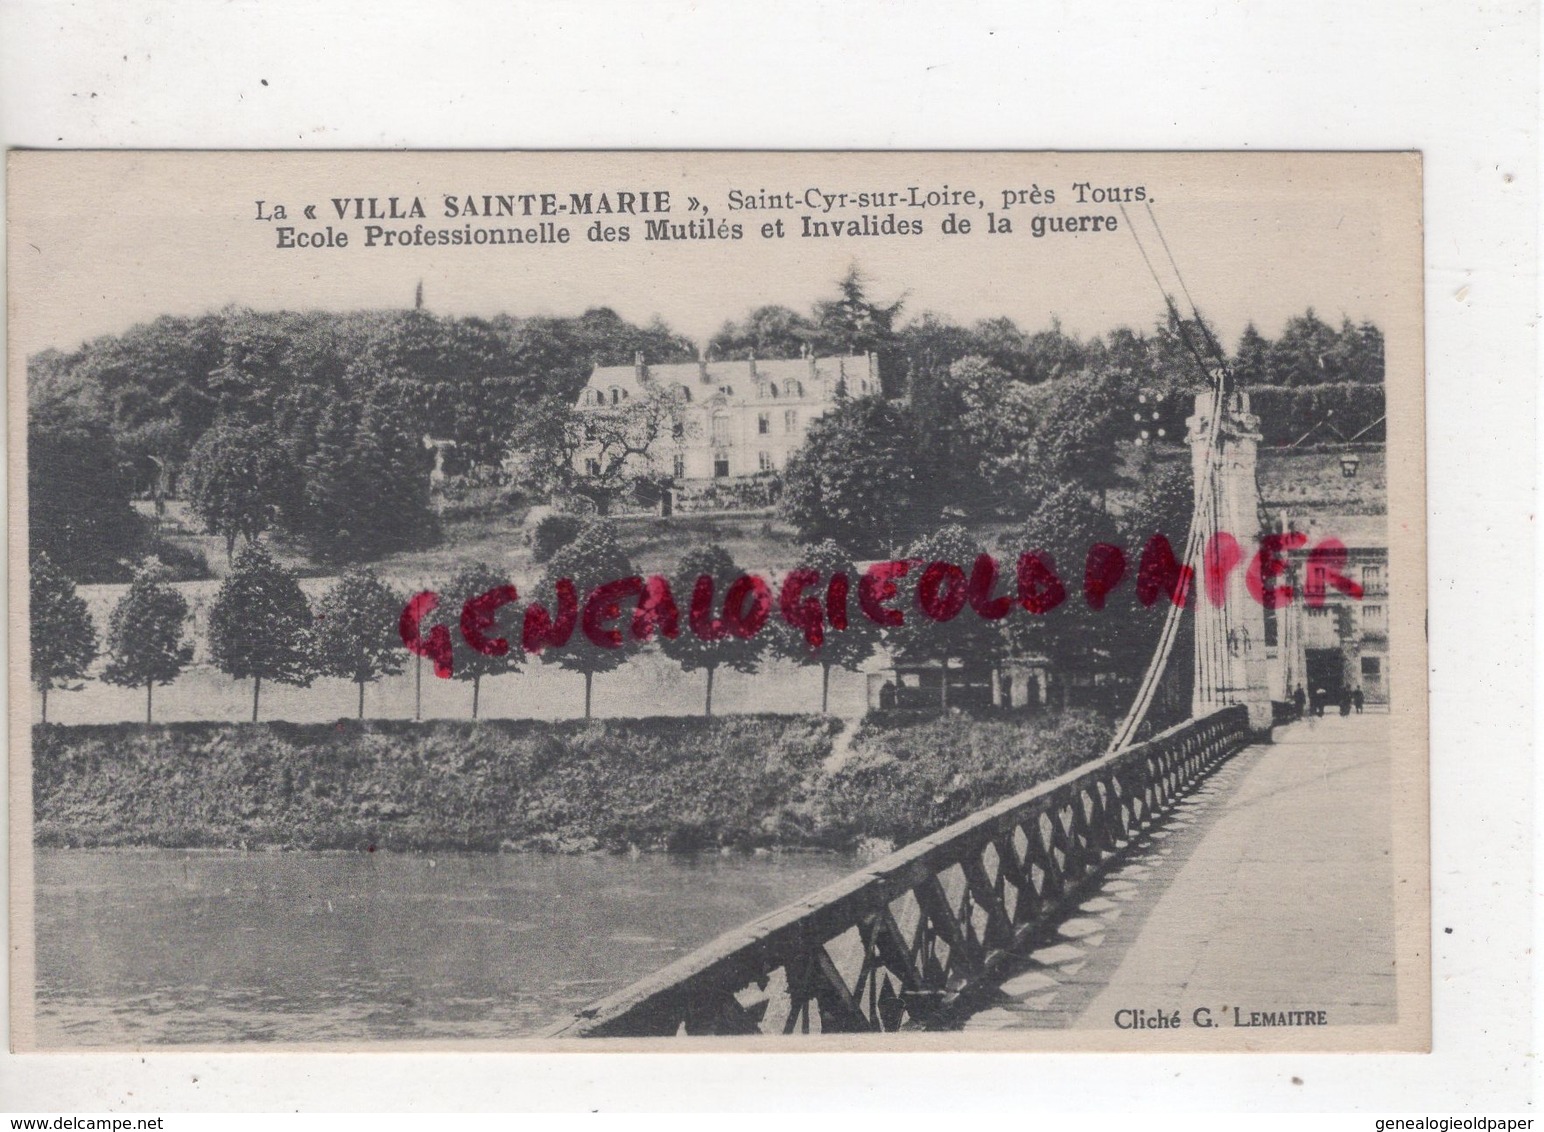 37 - SAINT CYR SUR LOIRE- ST CYR SUR LOIRE-  LA VILLA SAINTE MARIE -ECOLE PROFESSIONELLE MUTILES INVALIDES GUERRE - Saint-Cyr-sur-Loire